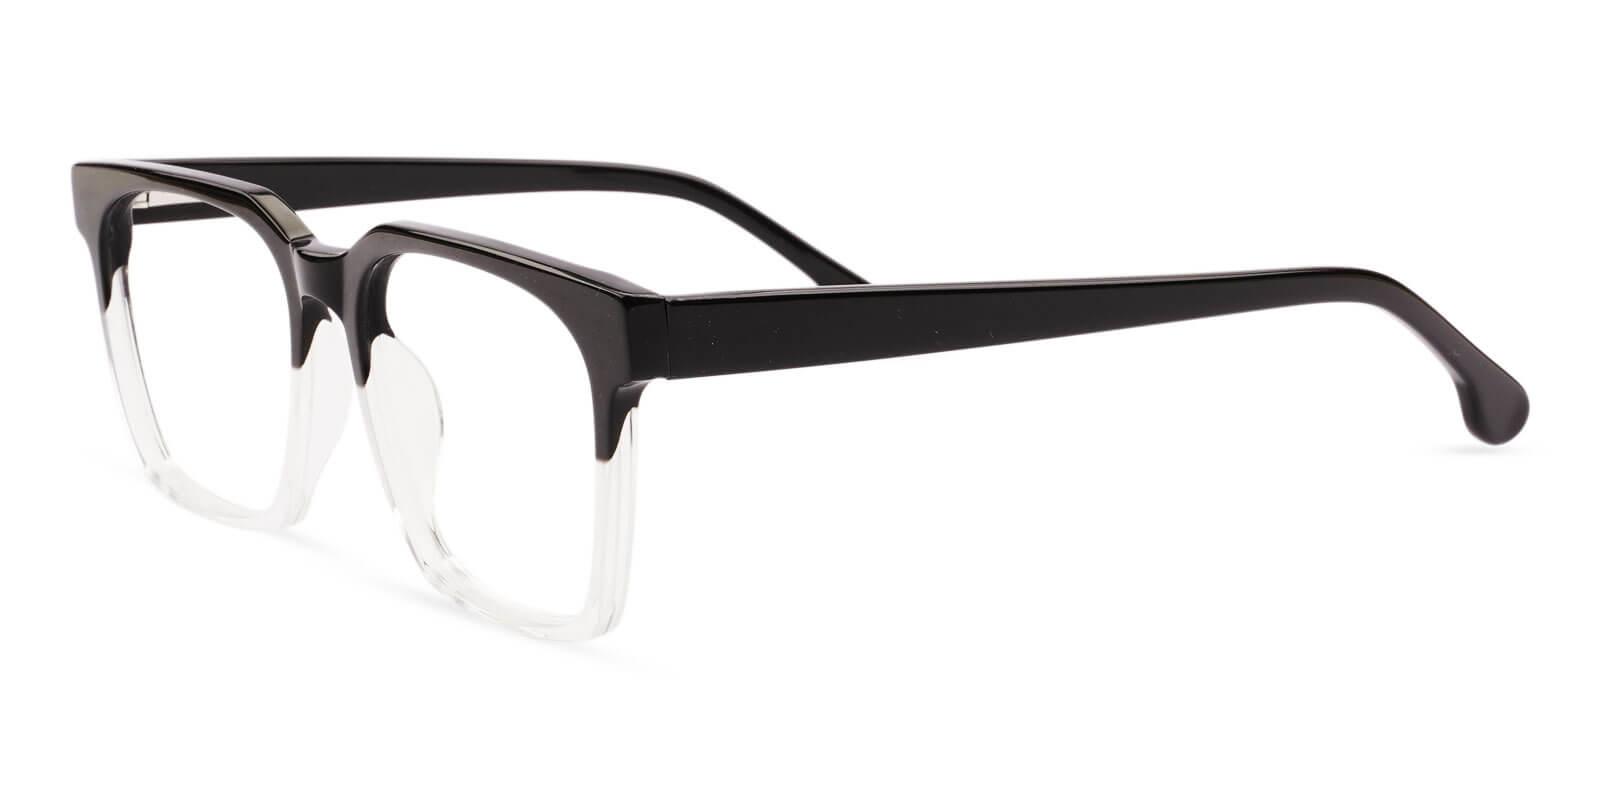 Gilbert Translucent Acetate Eyeglasses , UniversalBridgeFit Frames from ABBE Glasses